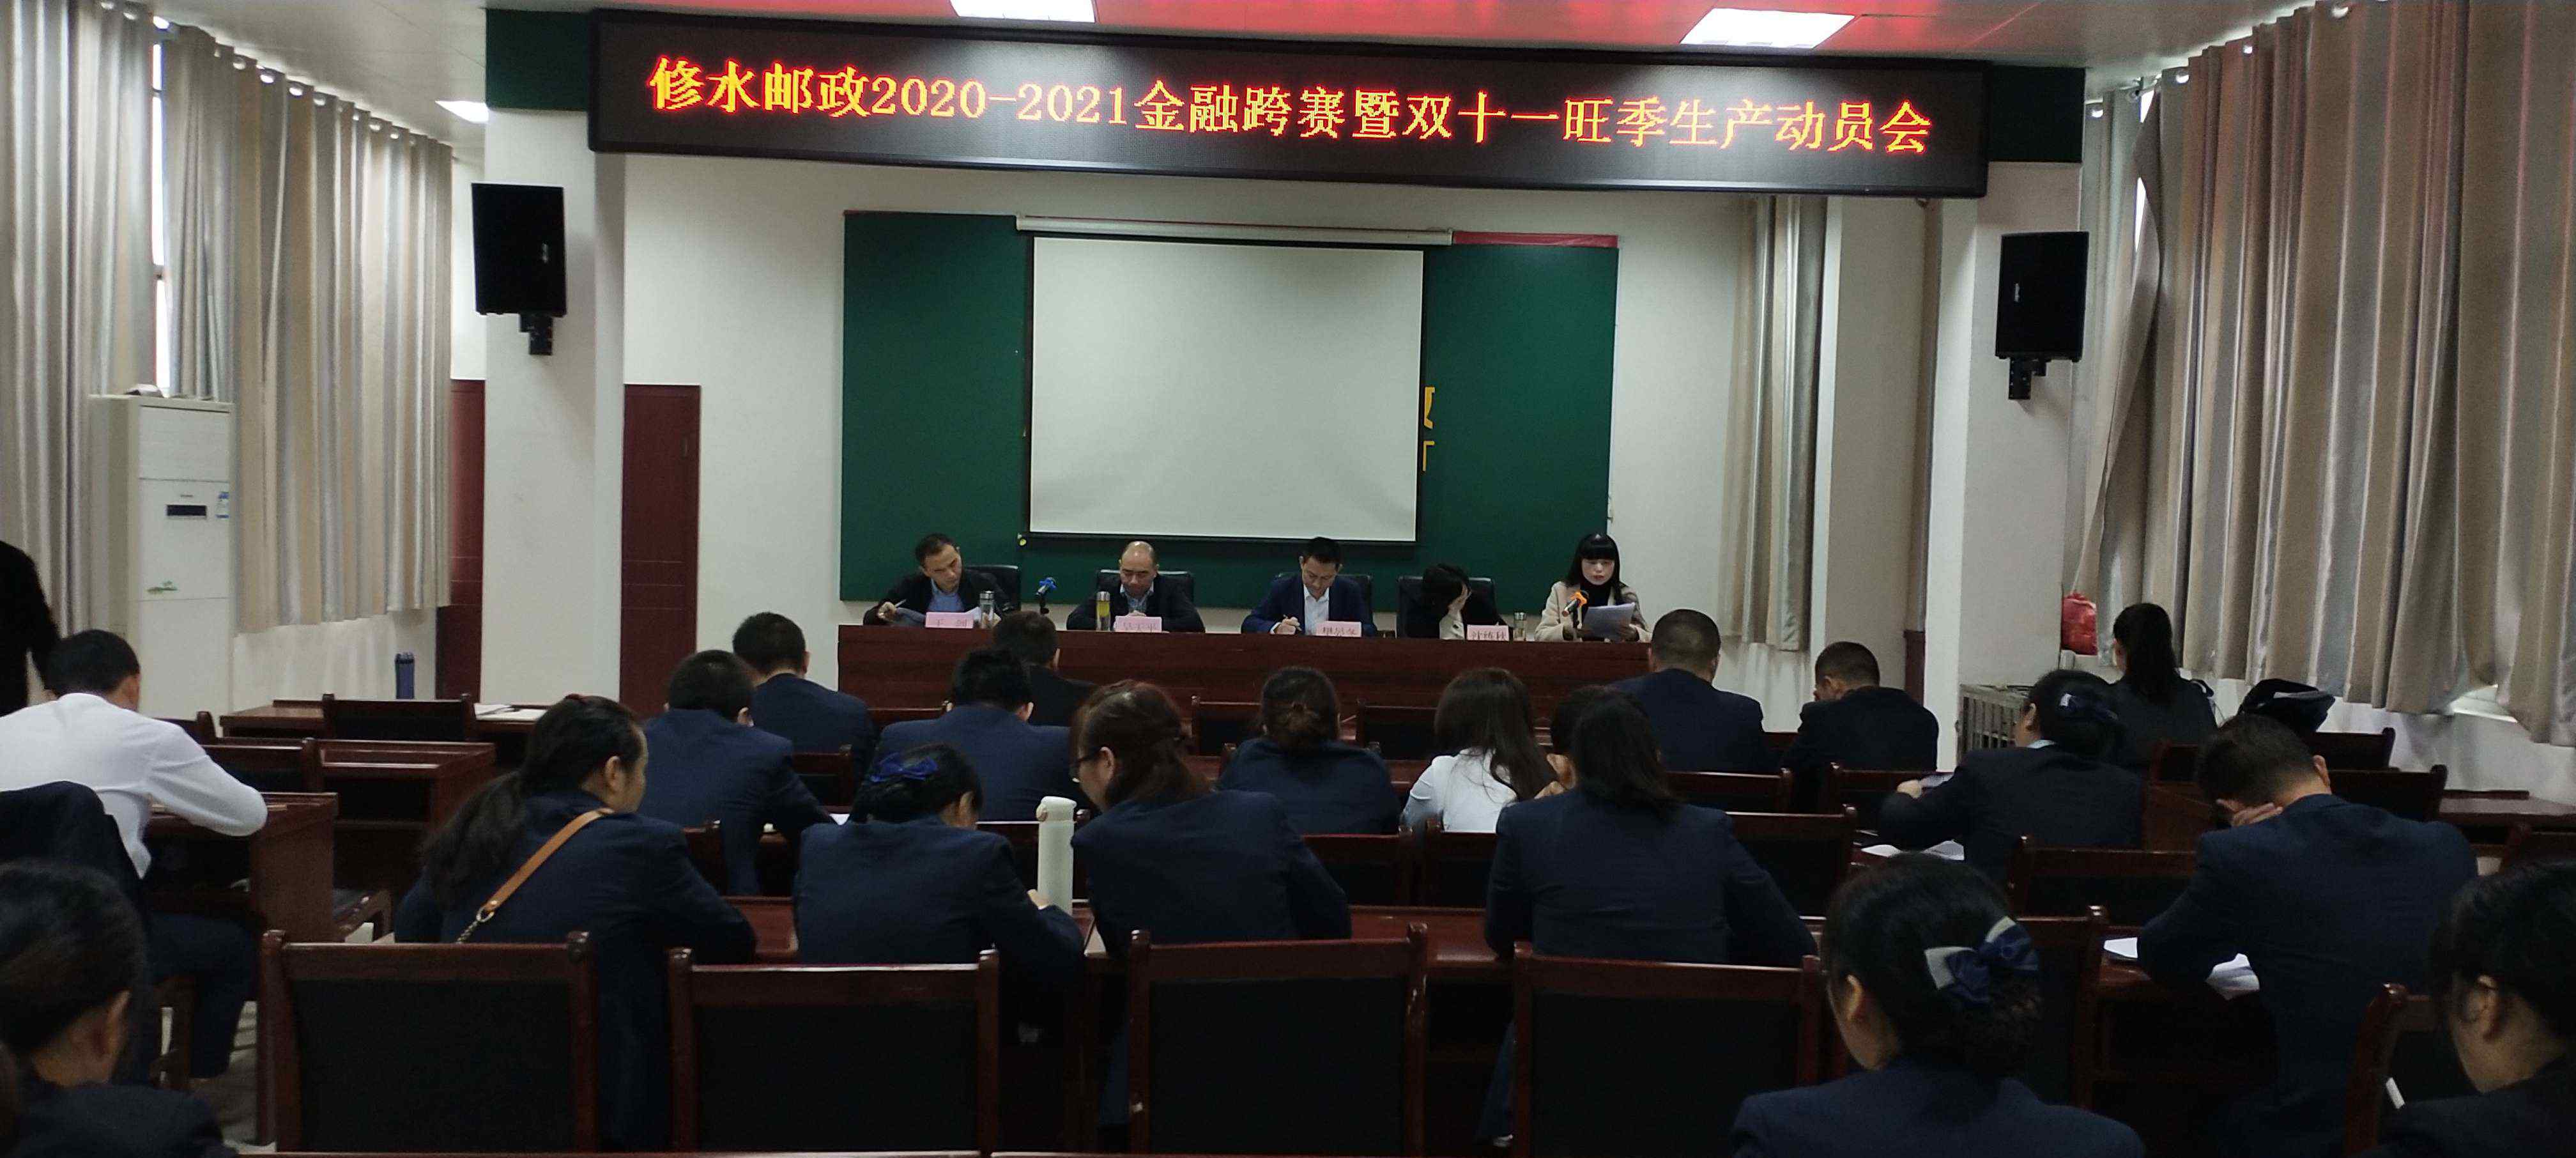 沈练 修水县邮政分公司2020－2021年金融跨赛暨深化转型启动会